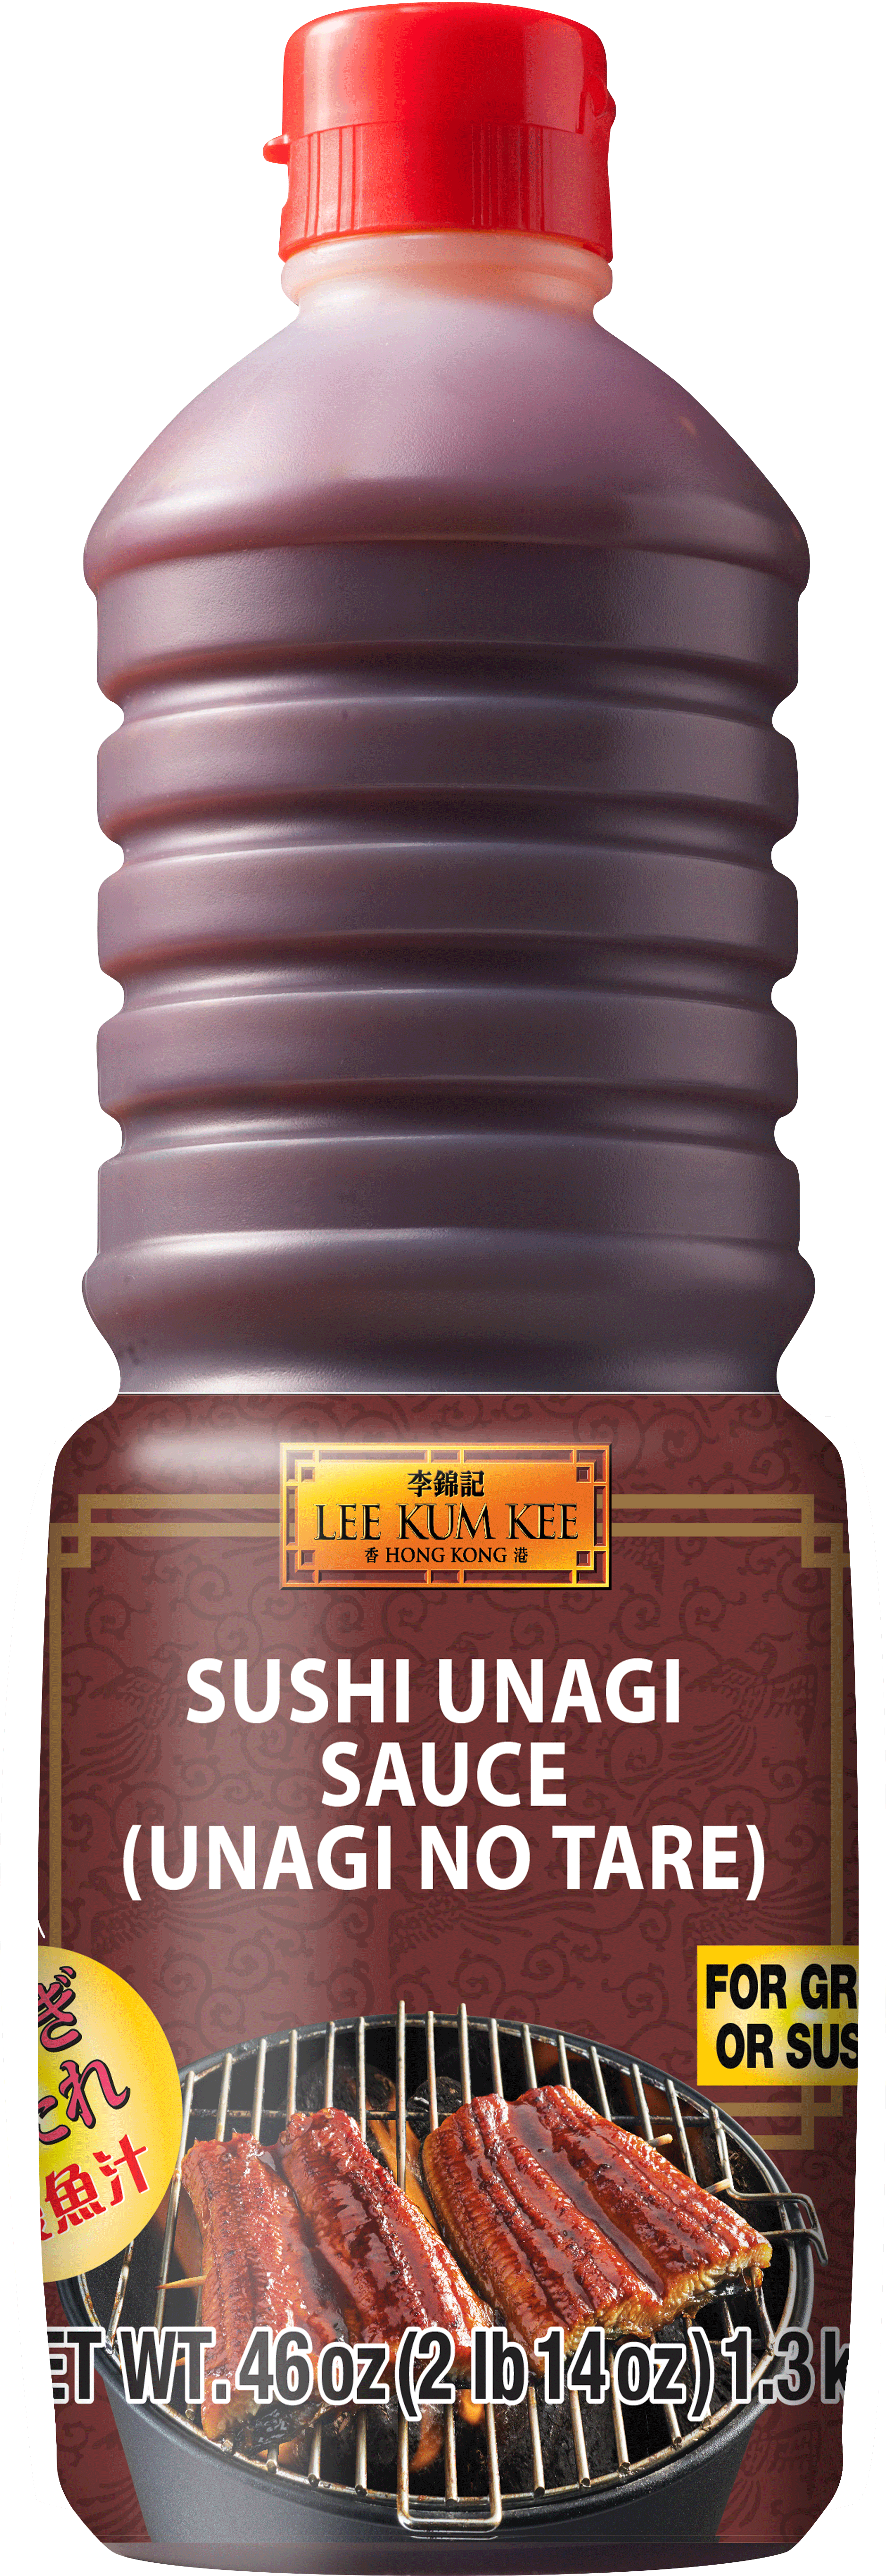 Sushi Unagi Sauce Unagi No Tare Usa